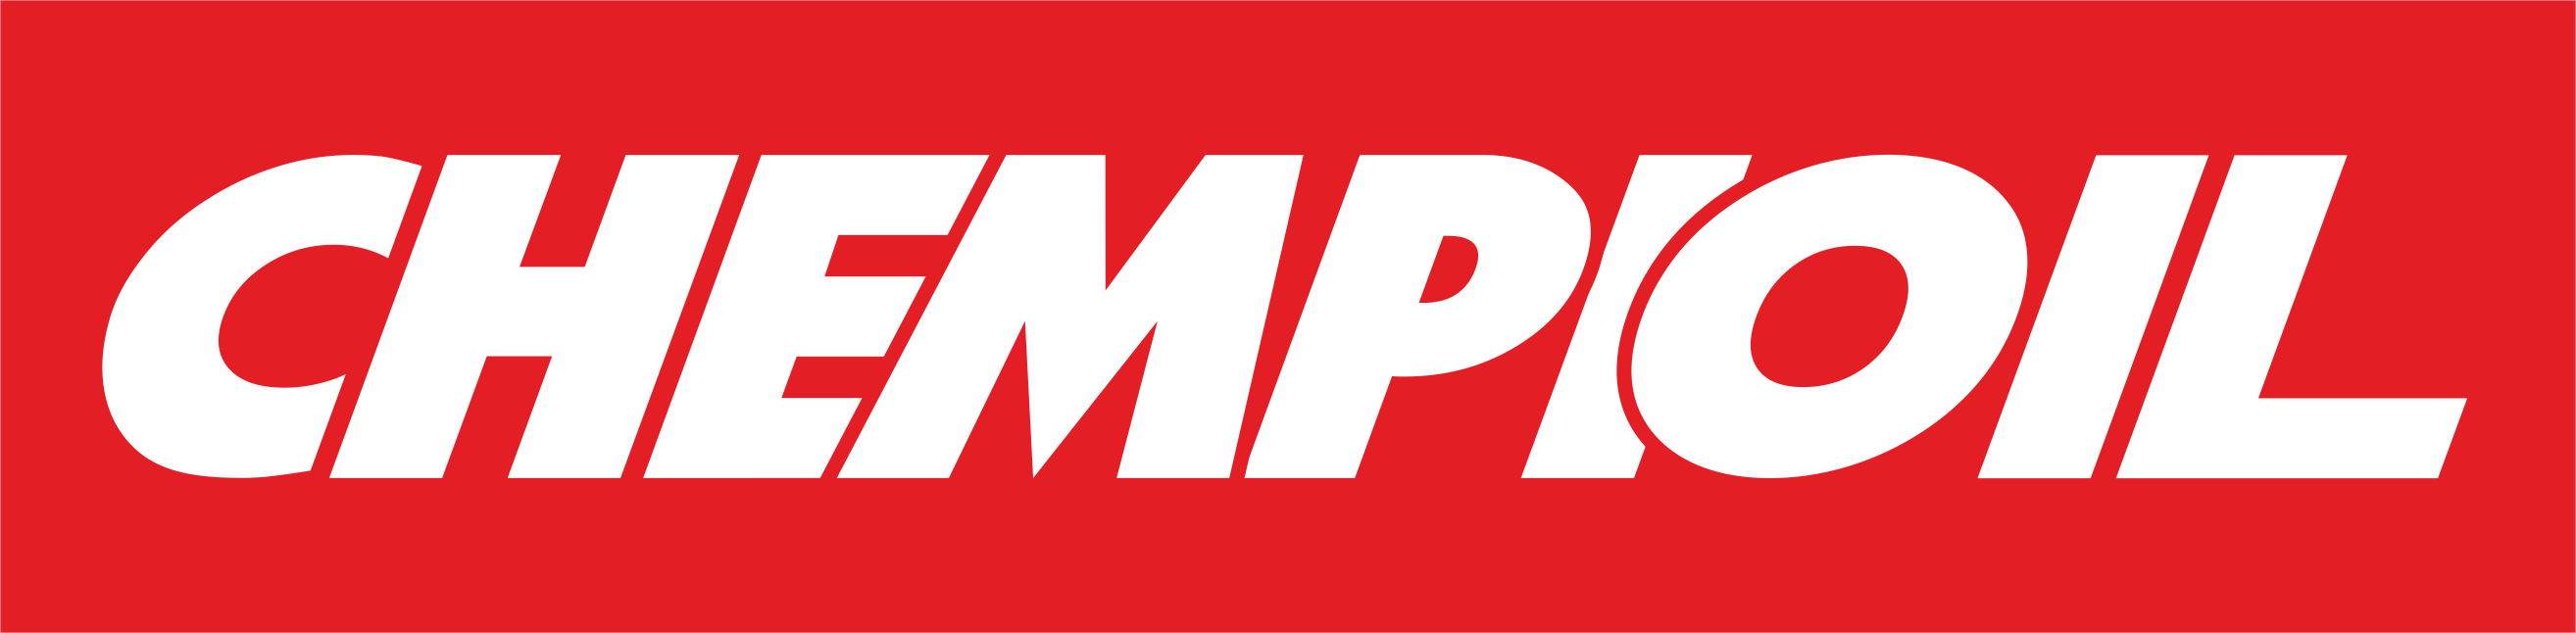 Производитель CHEMPIOIL логотип